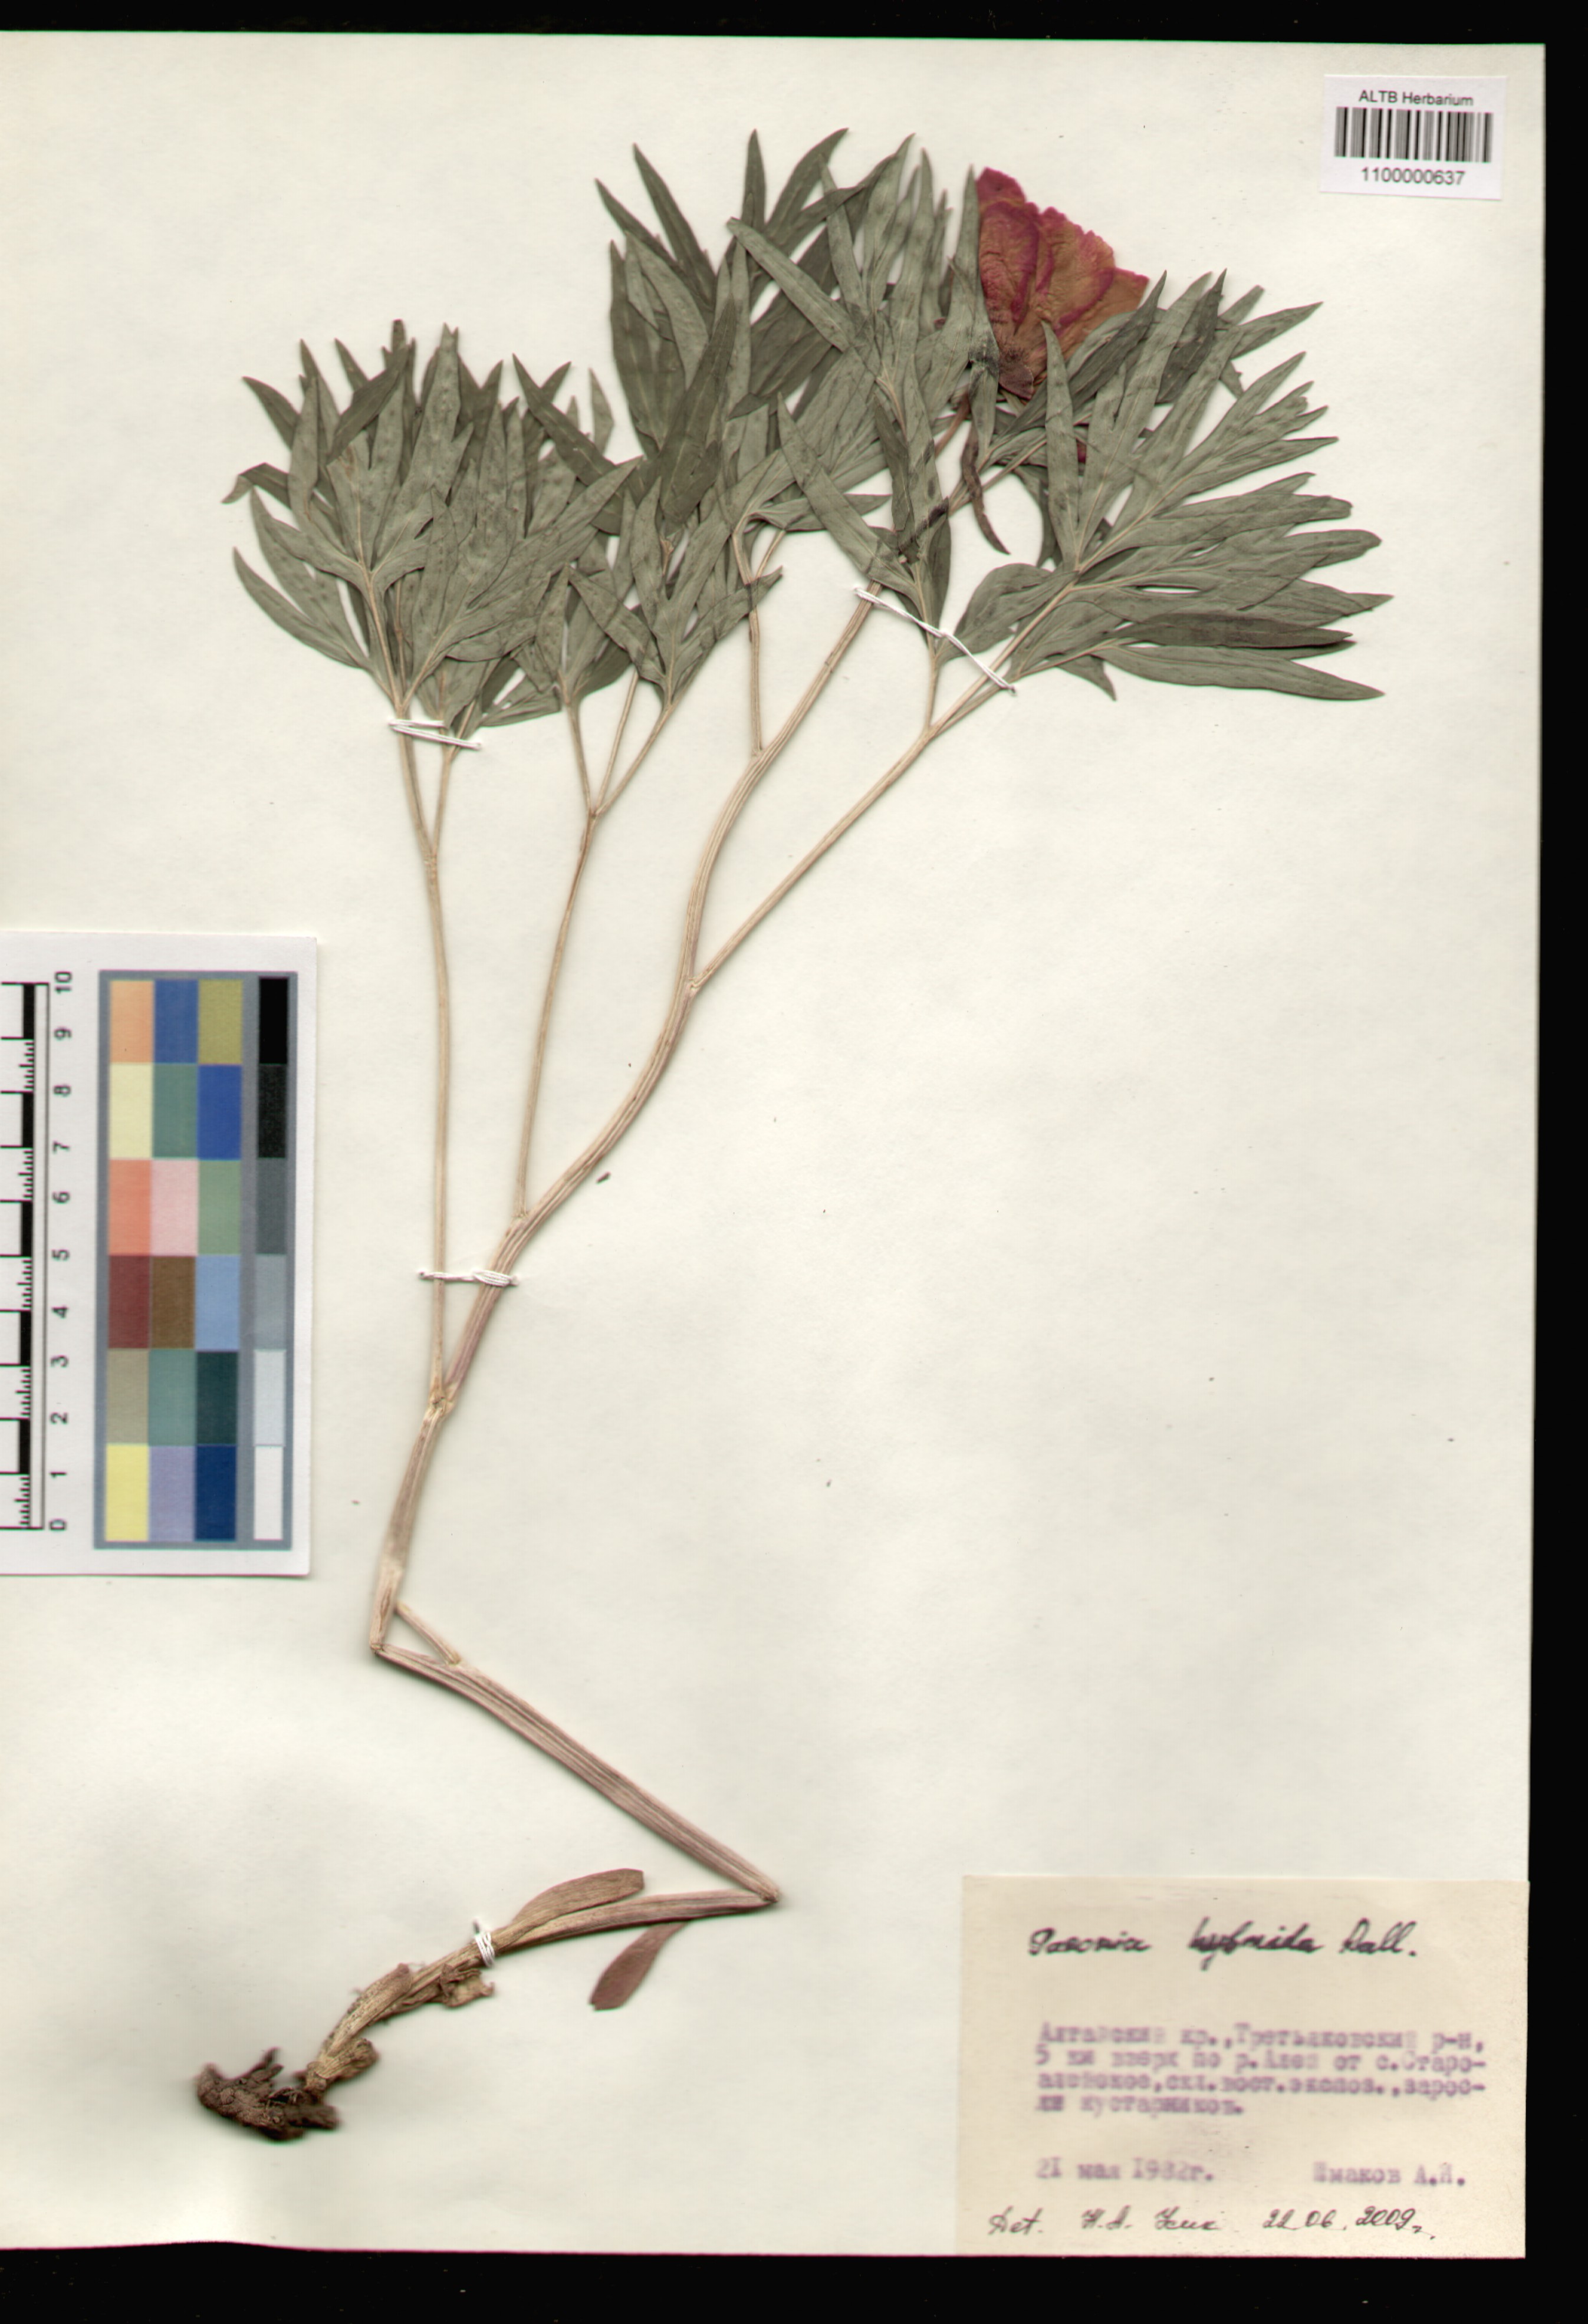 Paeoniaceae,Paeonia anomala L.